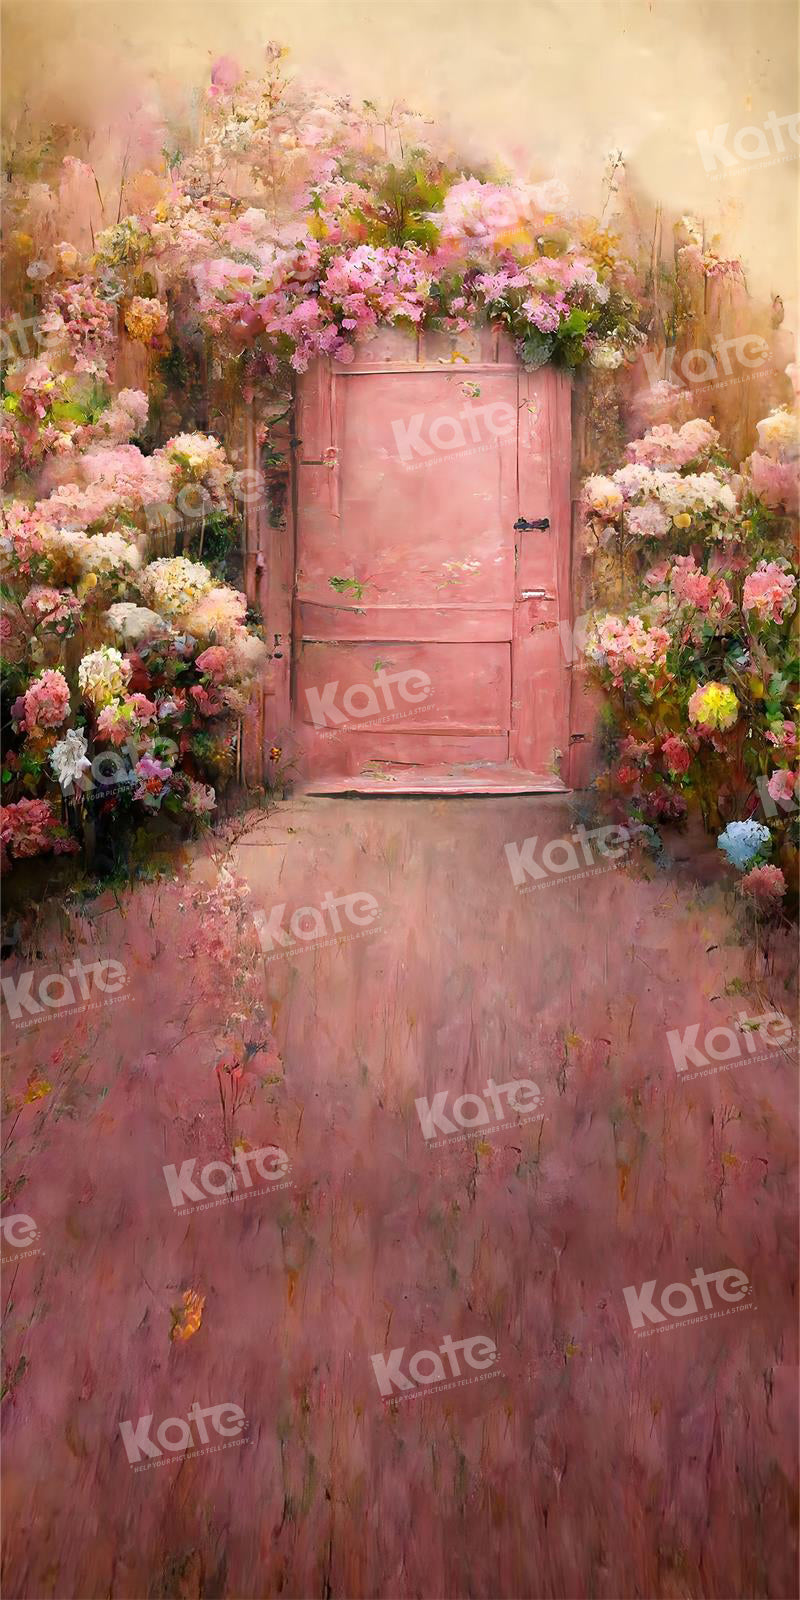 Kate Printemps Peinture Rétro Fleur épanouie Porte Toile de fond pour la photographie